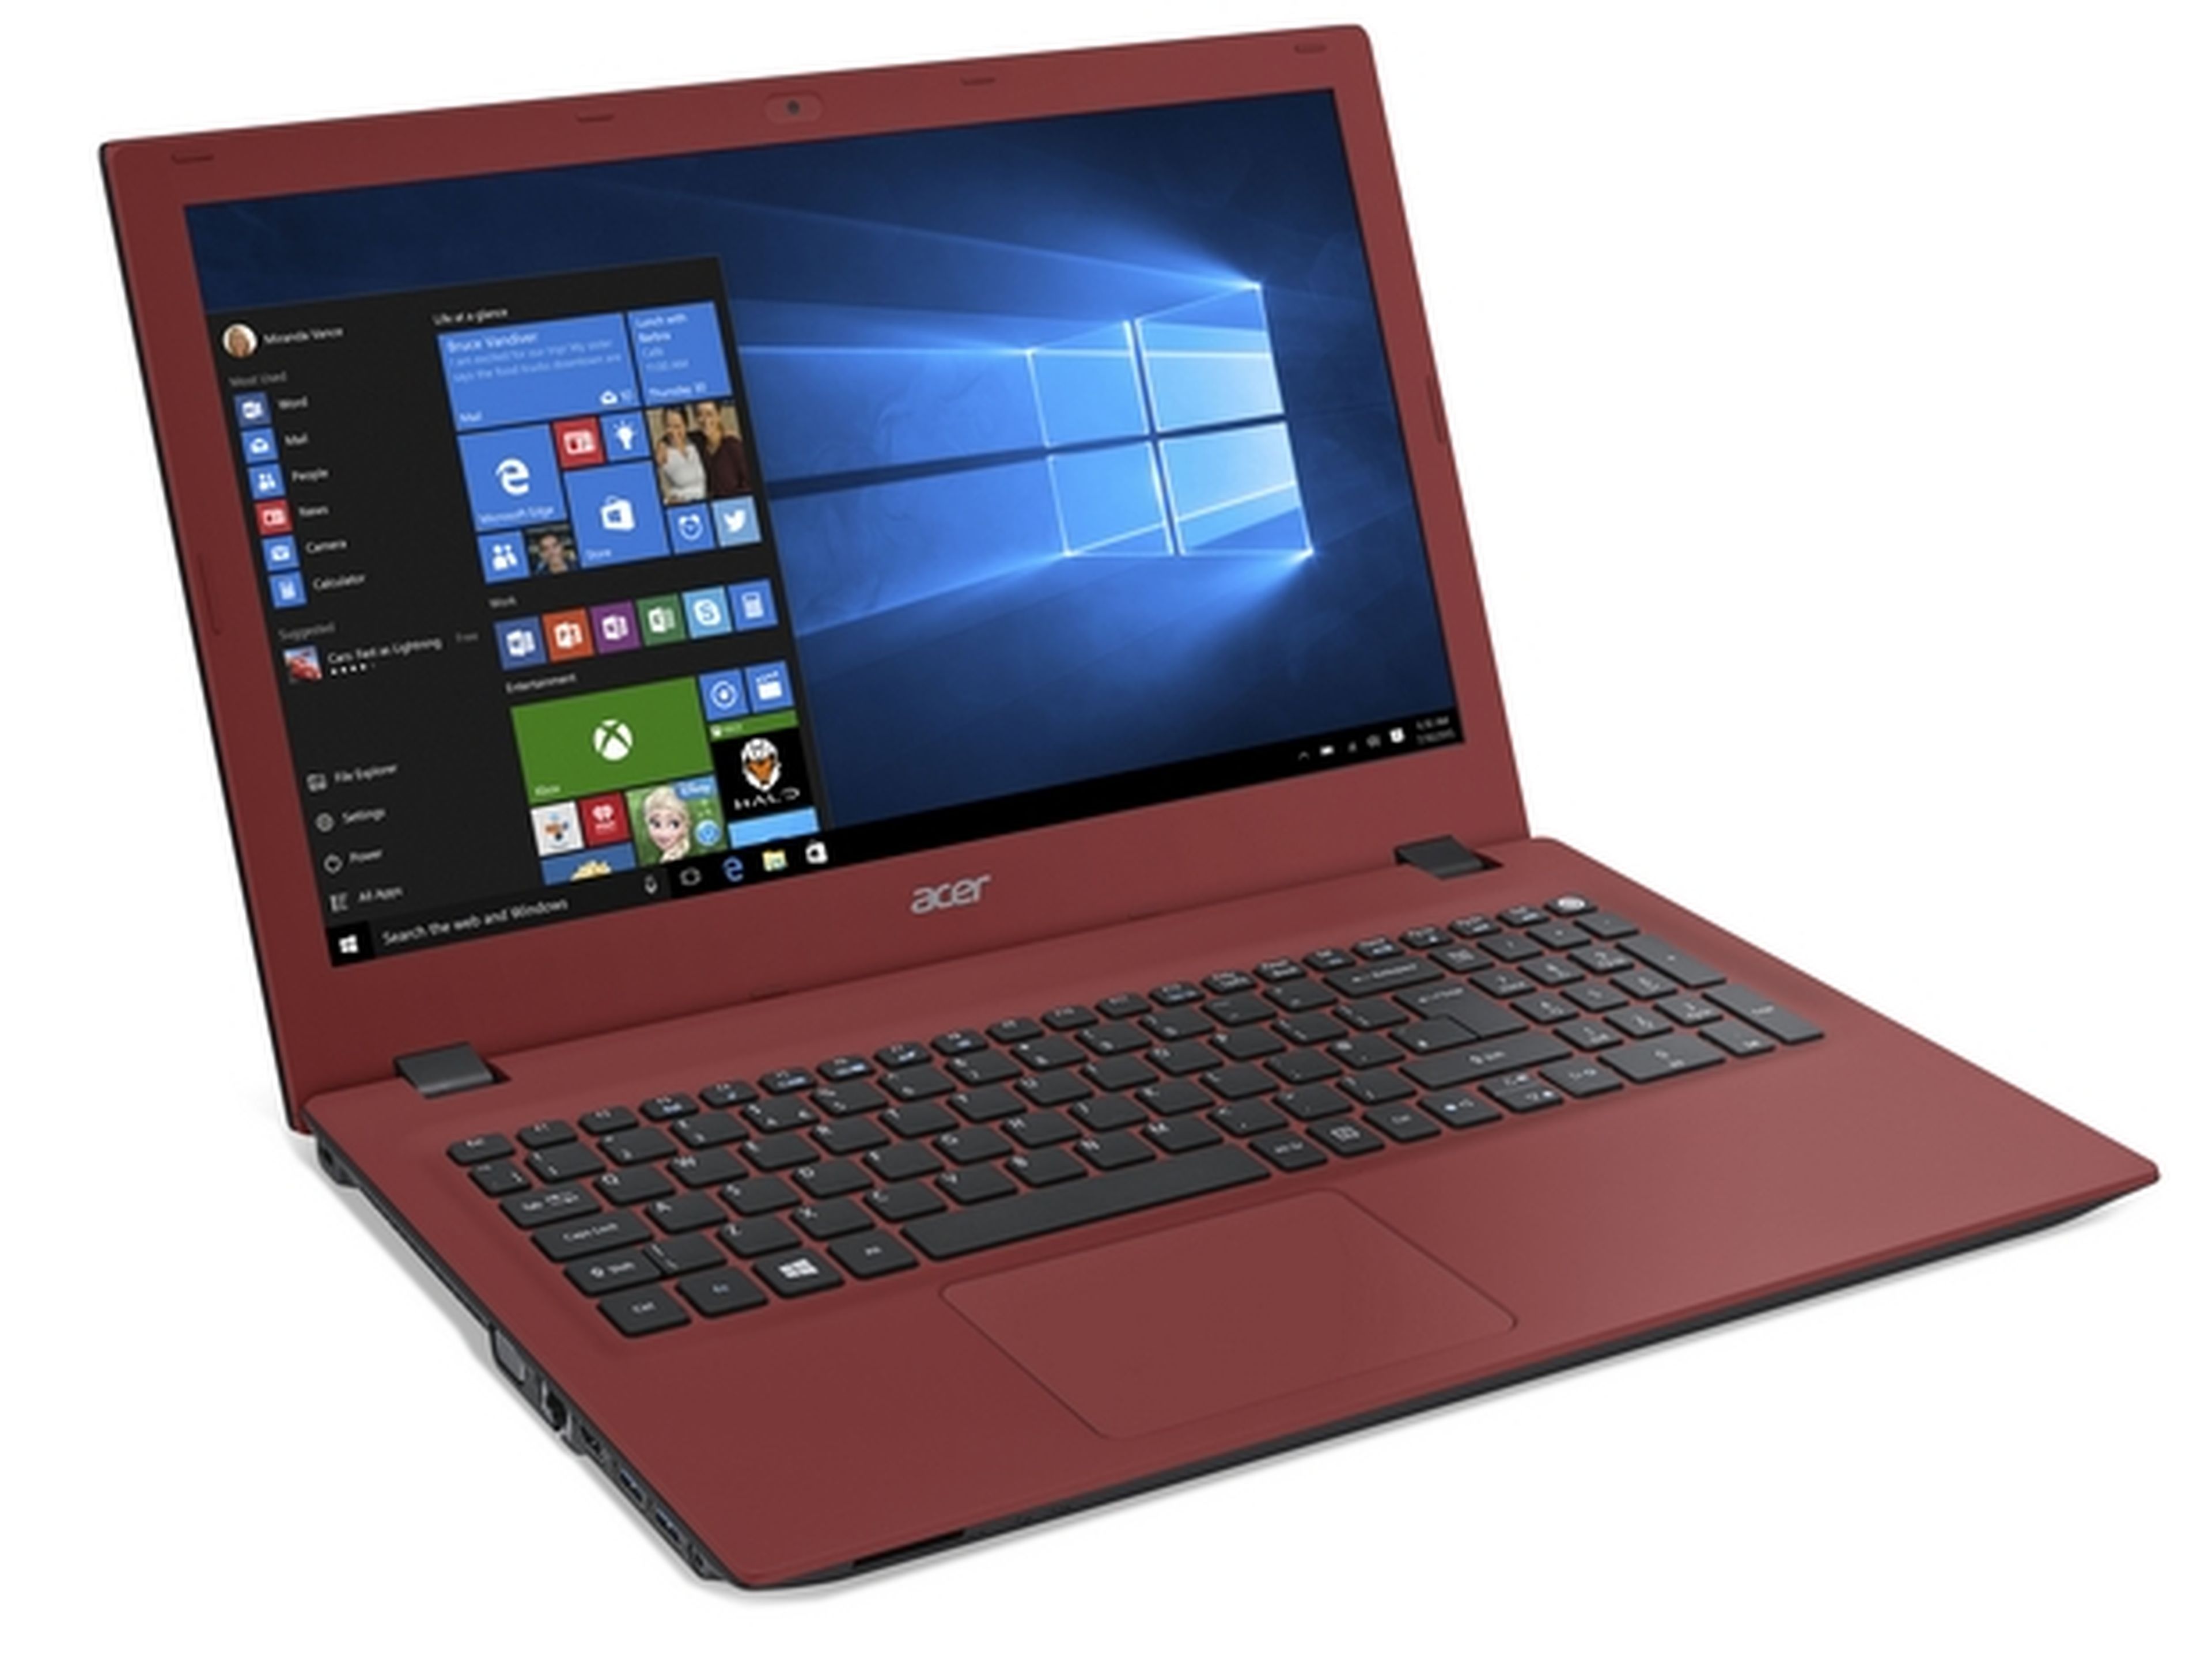 ¿Cómo debe ser el portátil perfecto? Diseño y funcionalidad. Así es el notebook Acer Aspire E15